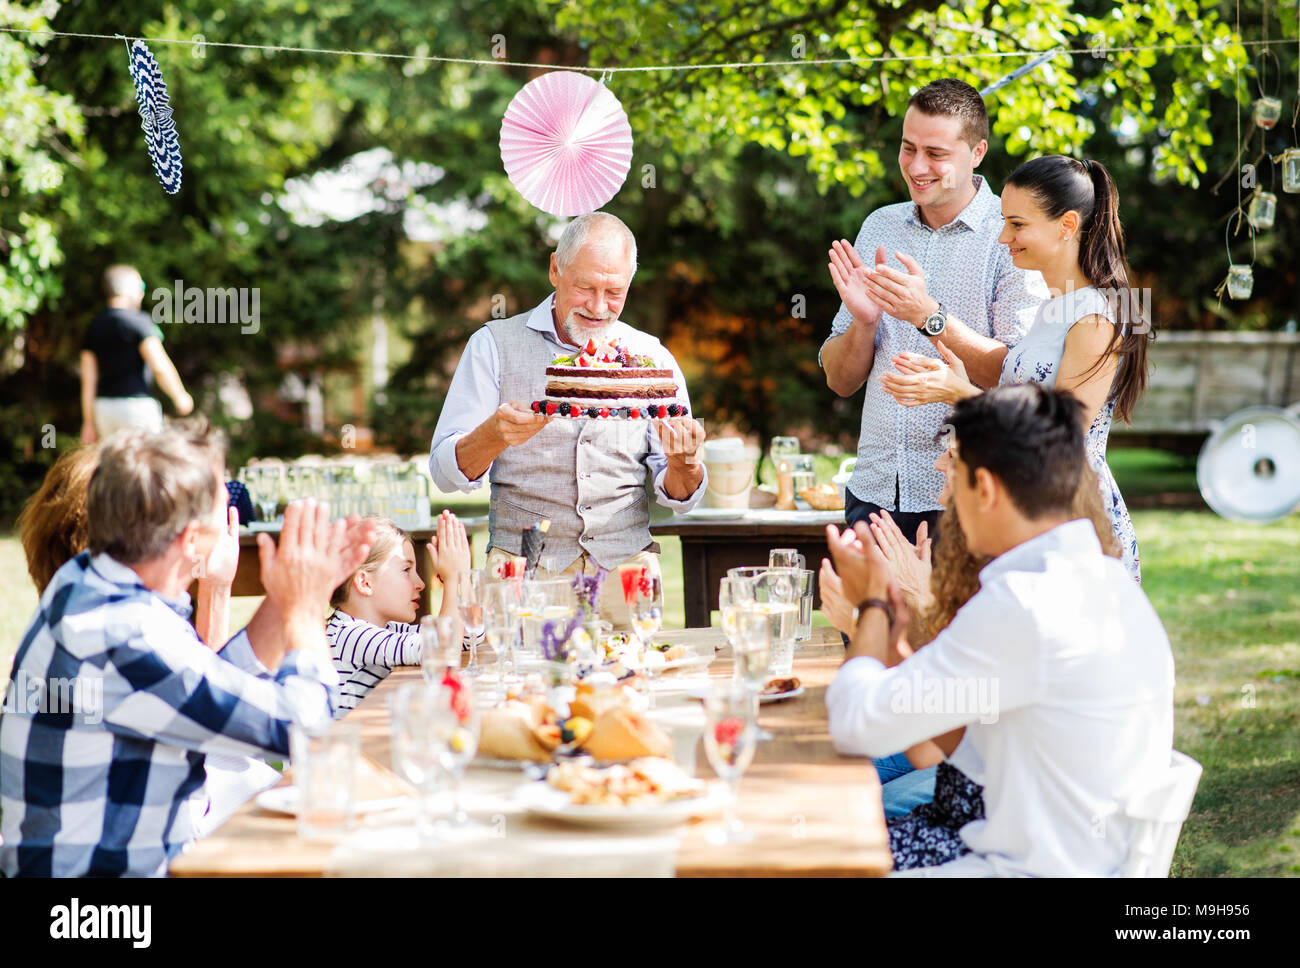 Festa di famiglia al di fuori nel cortile. Grande party in giardino. Festa di compleanno. Un anziano uomo con una torta di compleanno. Foto Stock